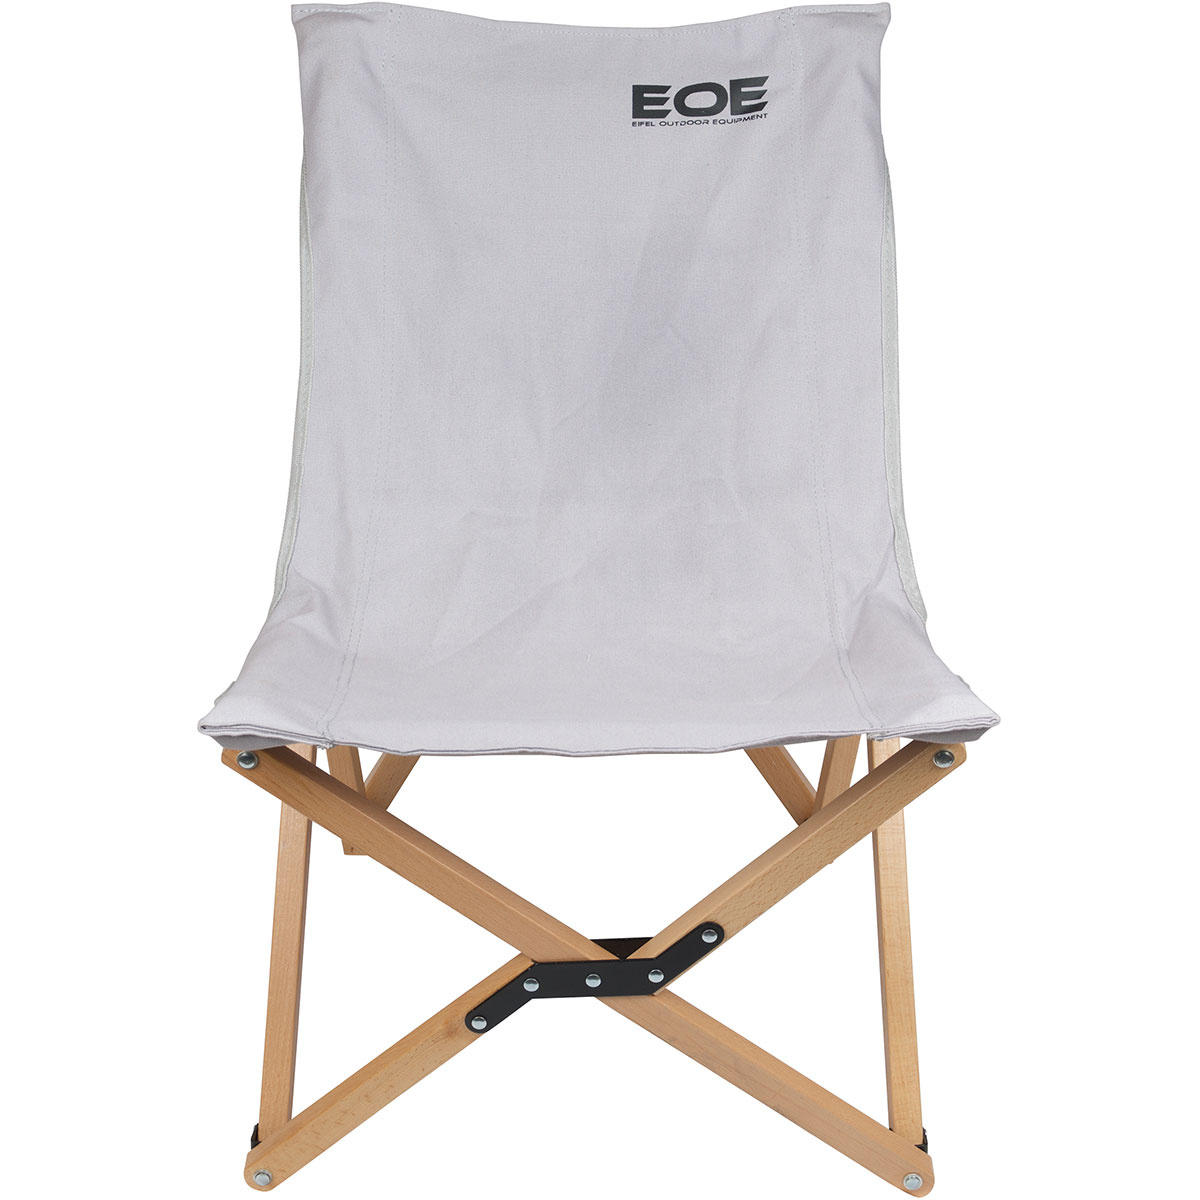 Image of EOE - Eifel Outdoor Equipment Sedia da campeggio M